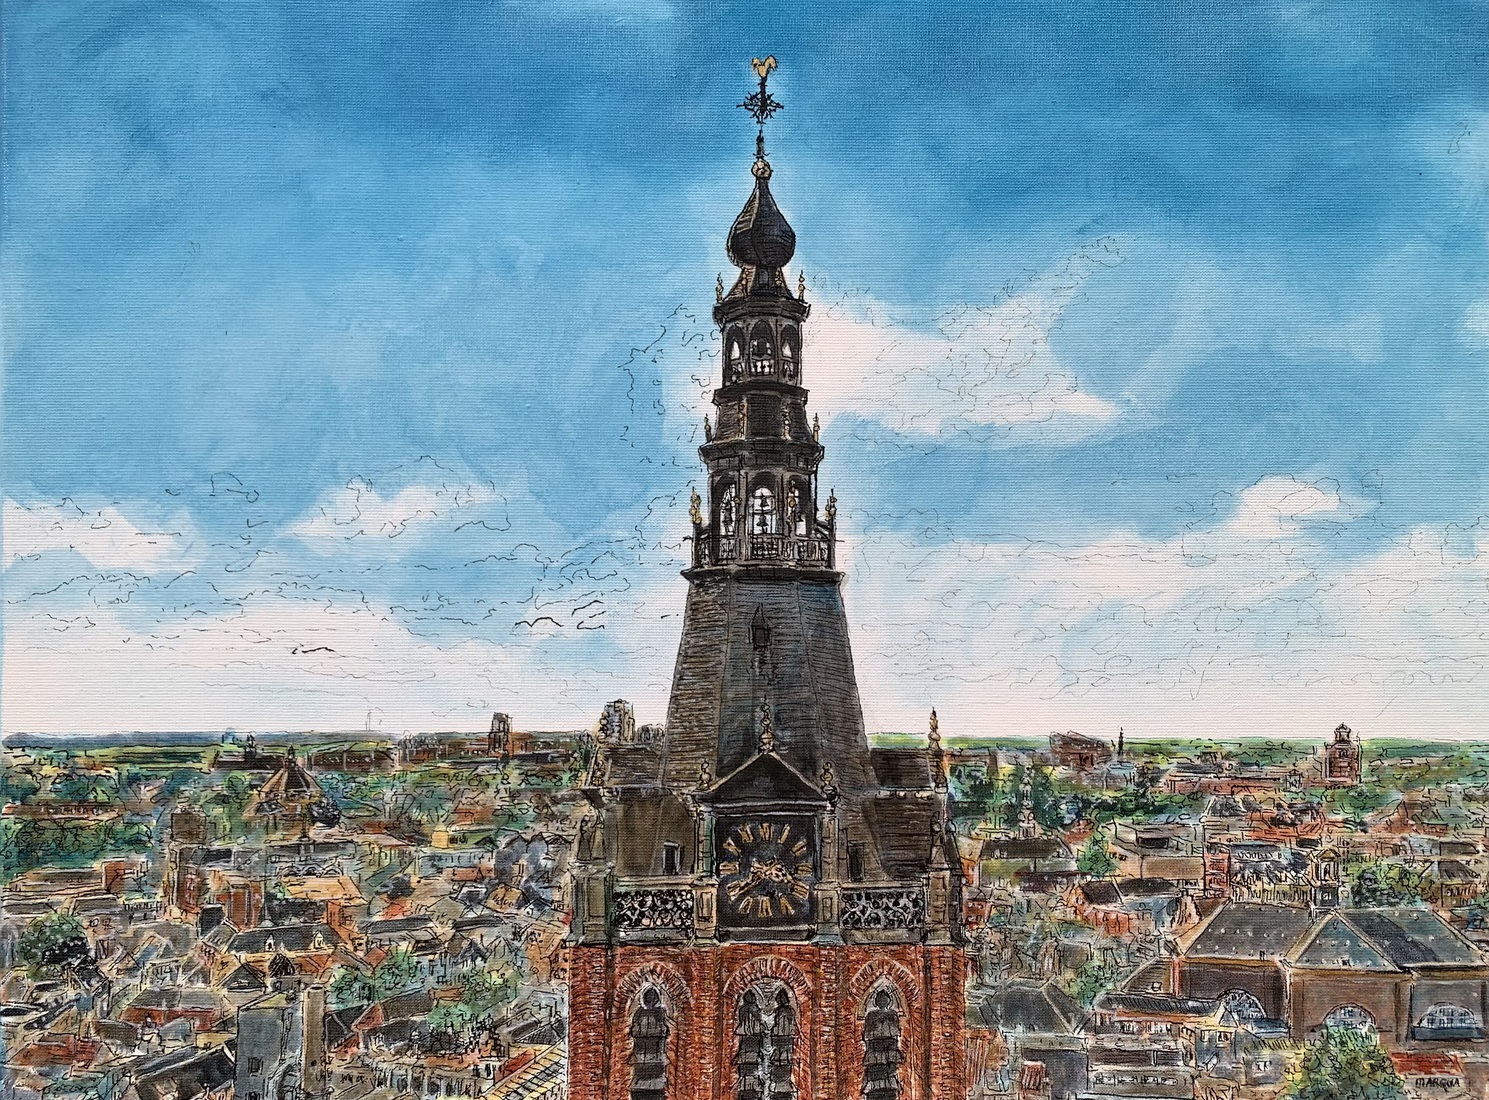 “De Avontuurlijke Klim”, toren Sint Jan MARQUA287 € 995